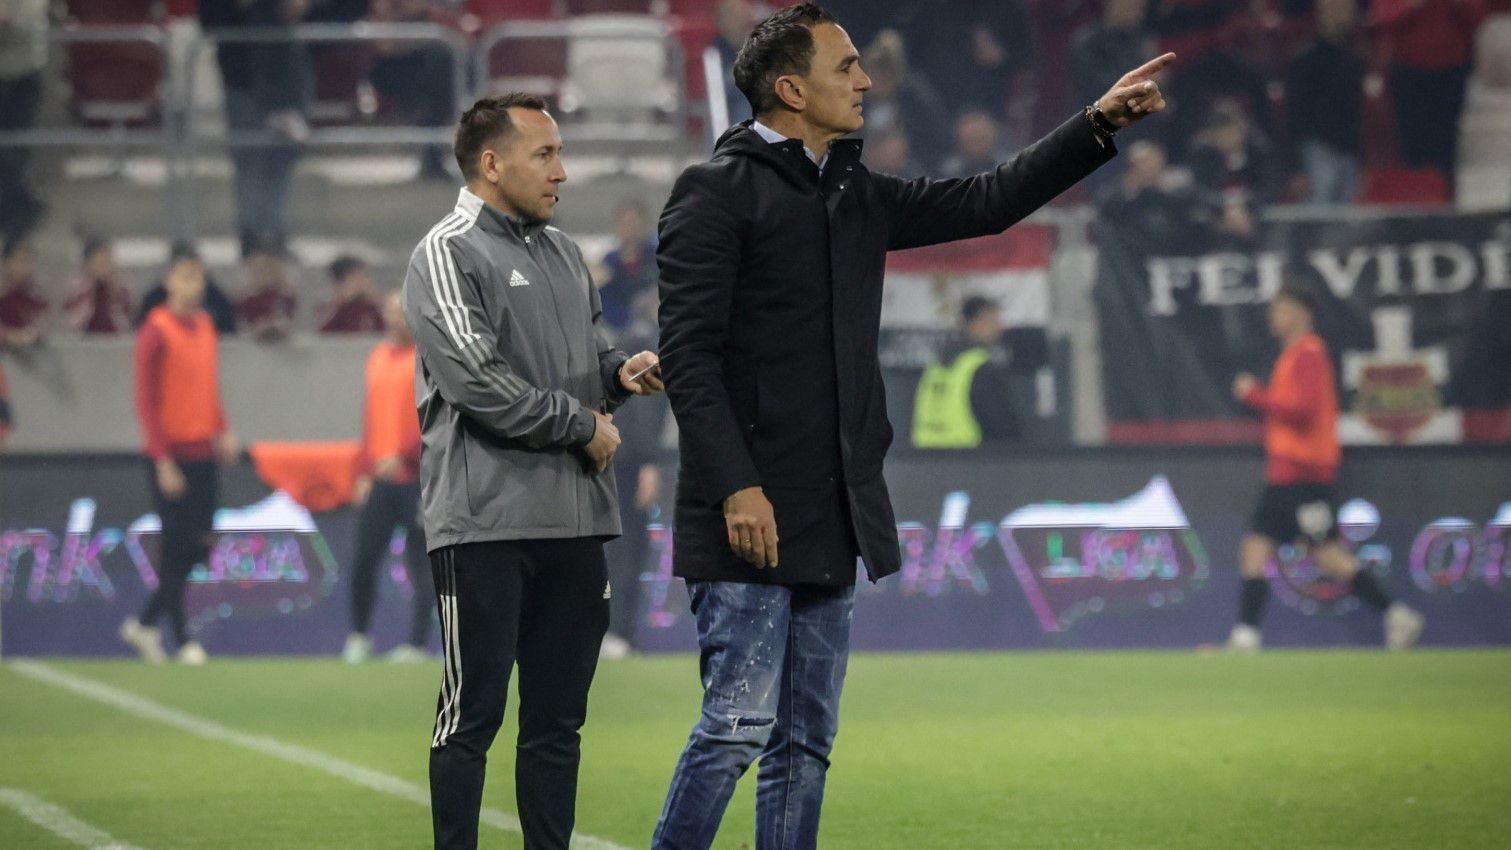 Nebojsa Vignjevics (jobbra) nem értette, miért örül mindenki az Újpest bennmaradásának, a klubnak magasabb célokért kellene küzdenie. (Fotó: ujpestfc.hu)